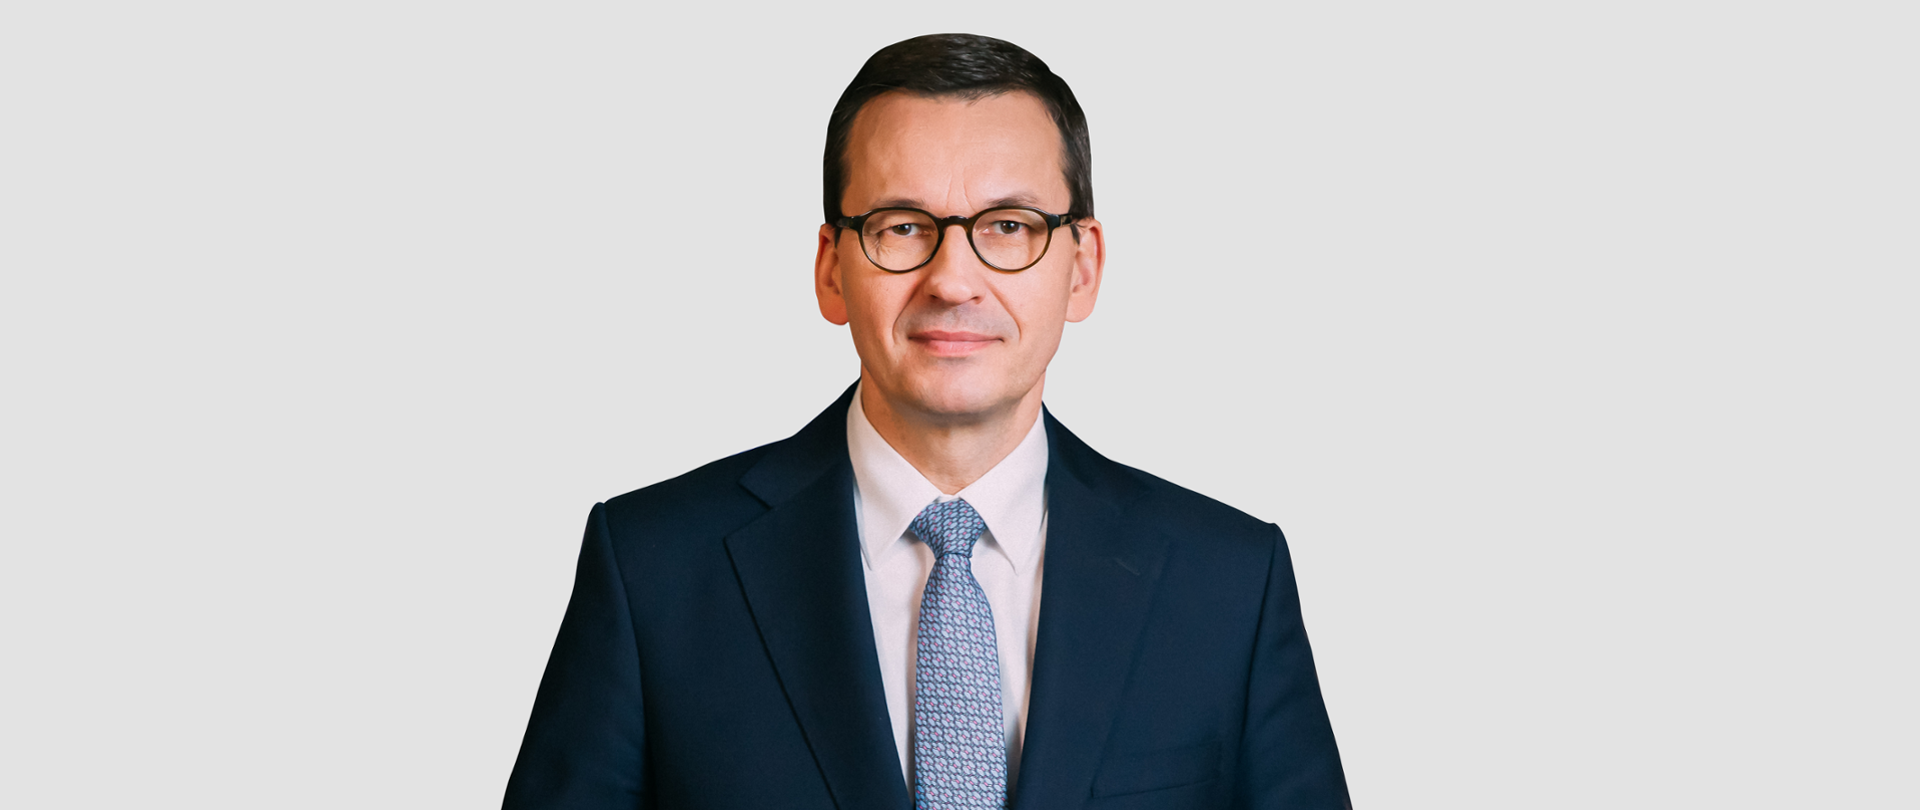 Mateusz Morawiecki - Prezes Rady Ministrów 